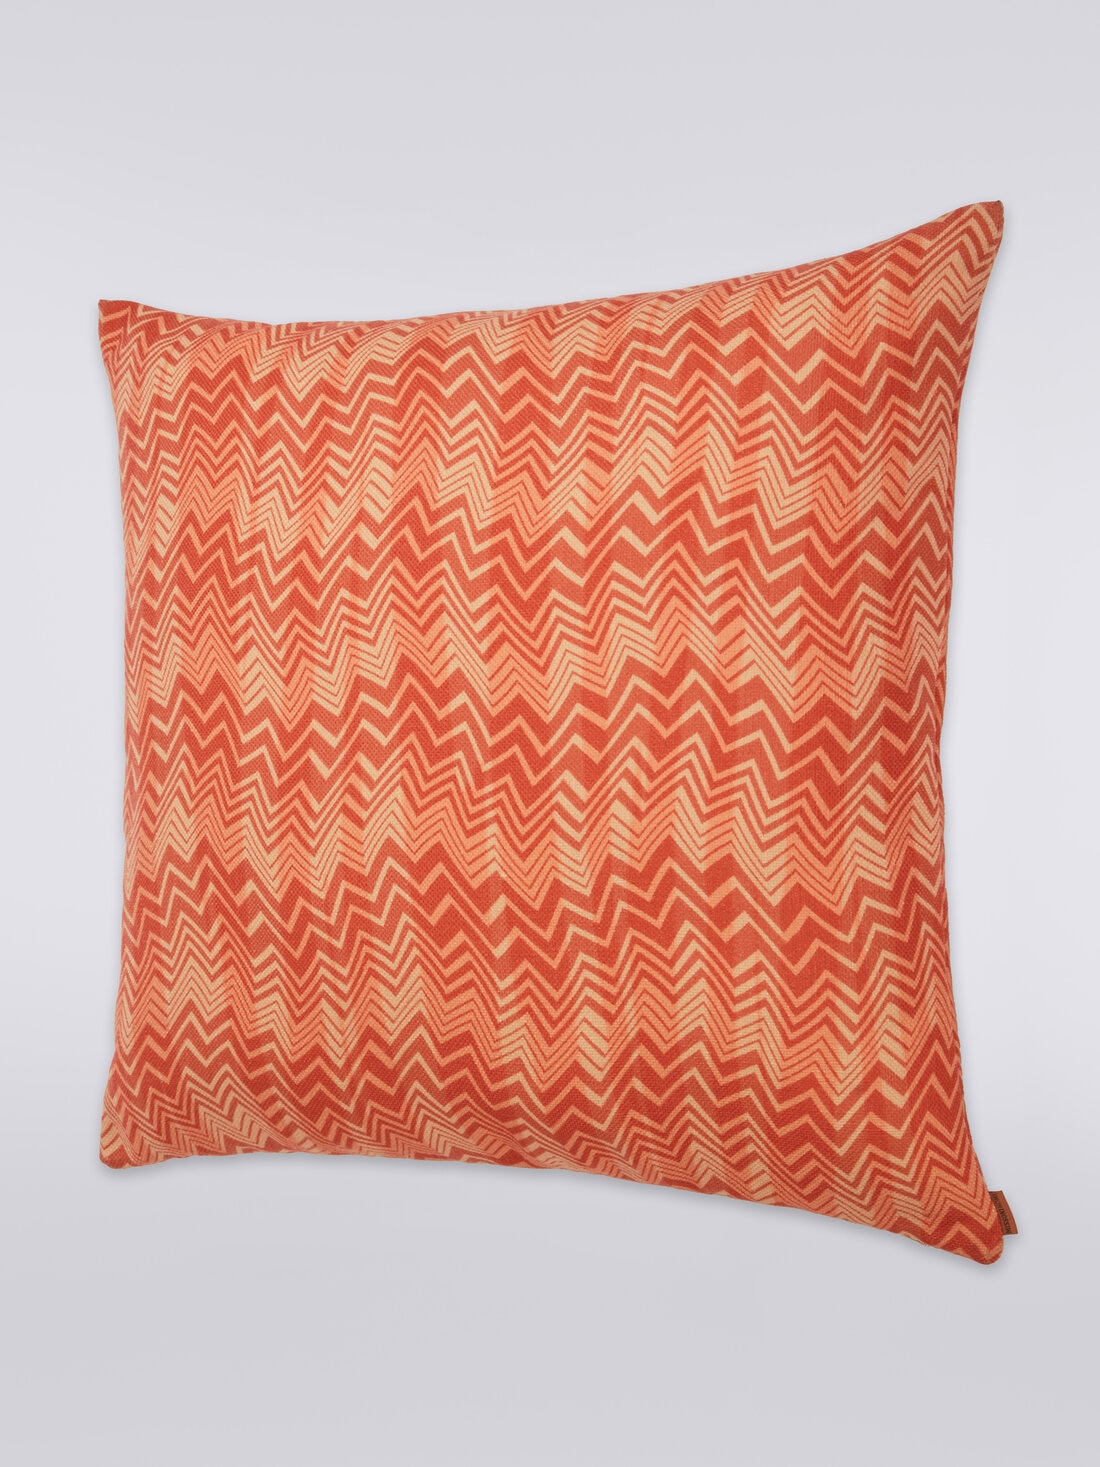 Belize cushion 60x60 cm, Multicoloured  - 8051275581192 - 1